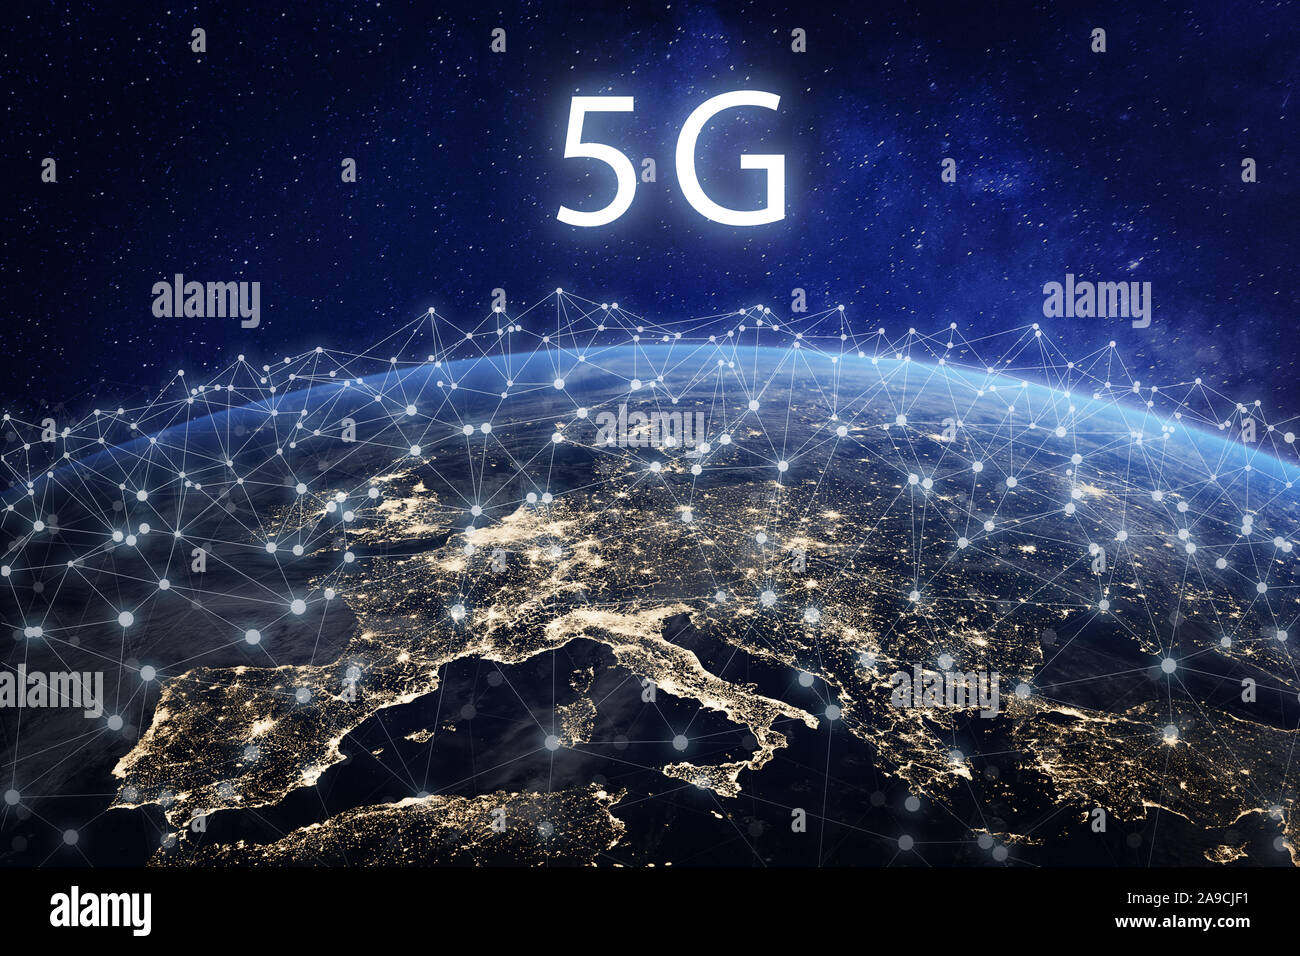 5G mobile Rete di telecomunicazione in Europa per alta velocità connessione dati wireless a internet da smartphone, la quinta generazione di onda radio commun Foto Stock